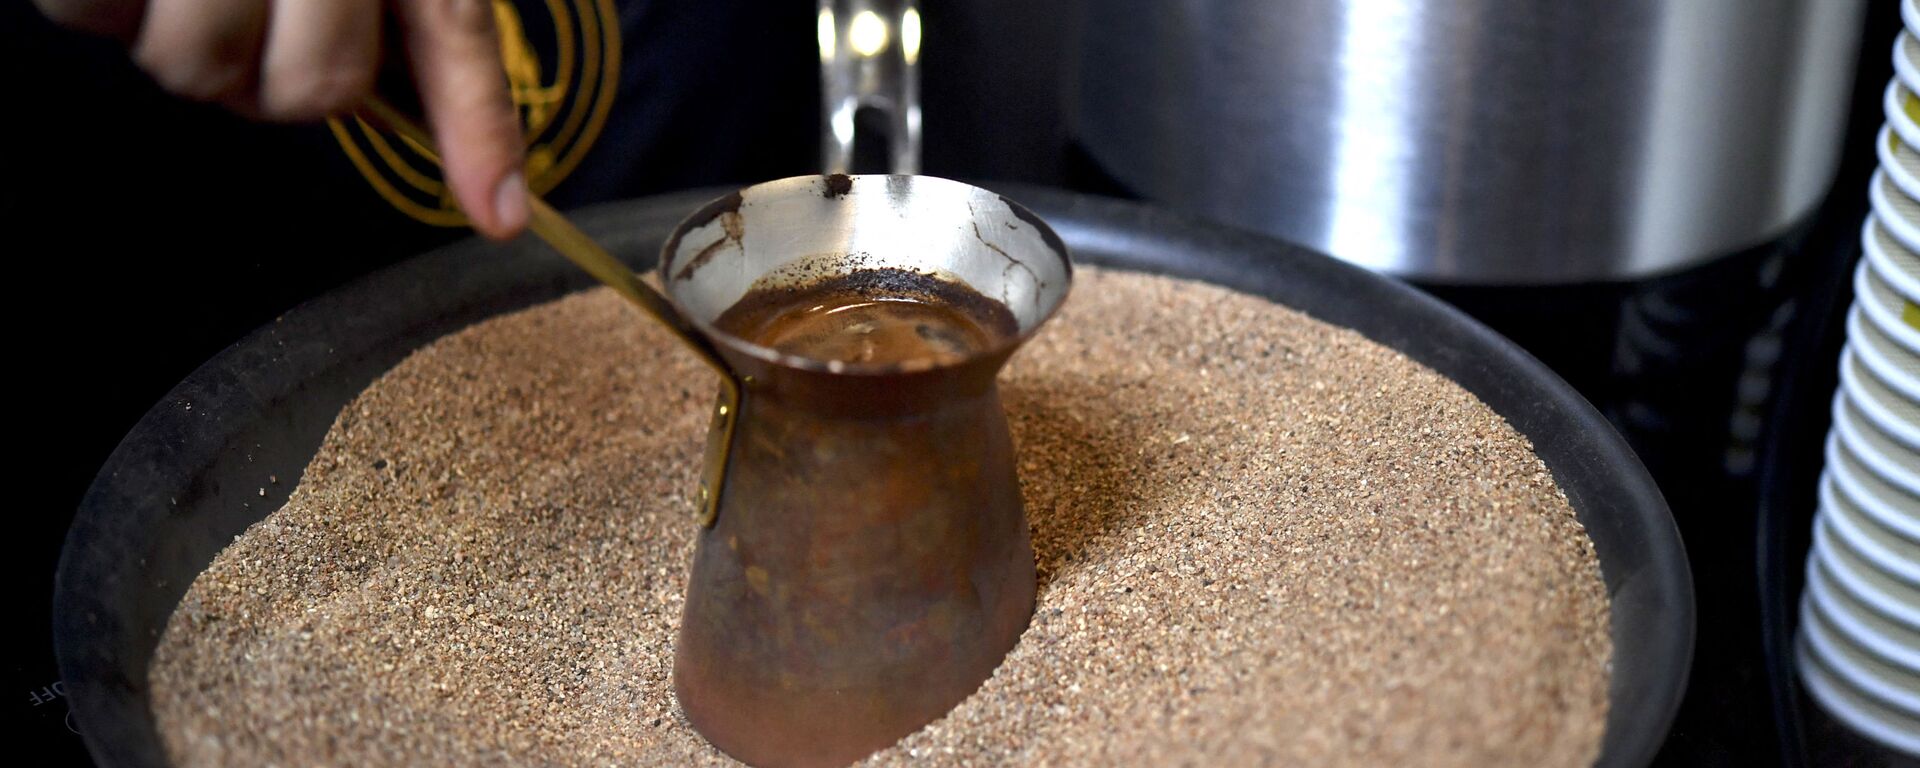 يقوم صانع القهوة المكسيكي بإعداد قهوة تركية مصنوعة داخل وعاء نحاسي على الرمال الساخنة أثناء افتتاح مهرجان القهوة إكسبو-كافيه 2017، بنسخته الـ 20 في مدينة مكسيكو سيتي، المكسيك،31 أغسطس 2017 - سبوتنيك عربي, 1920, 01.06.2021